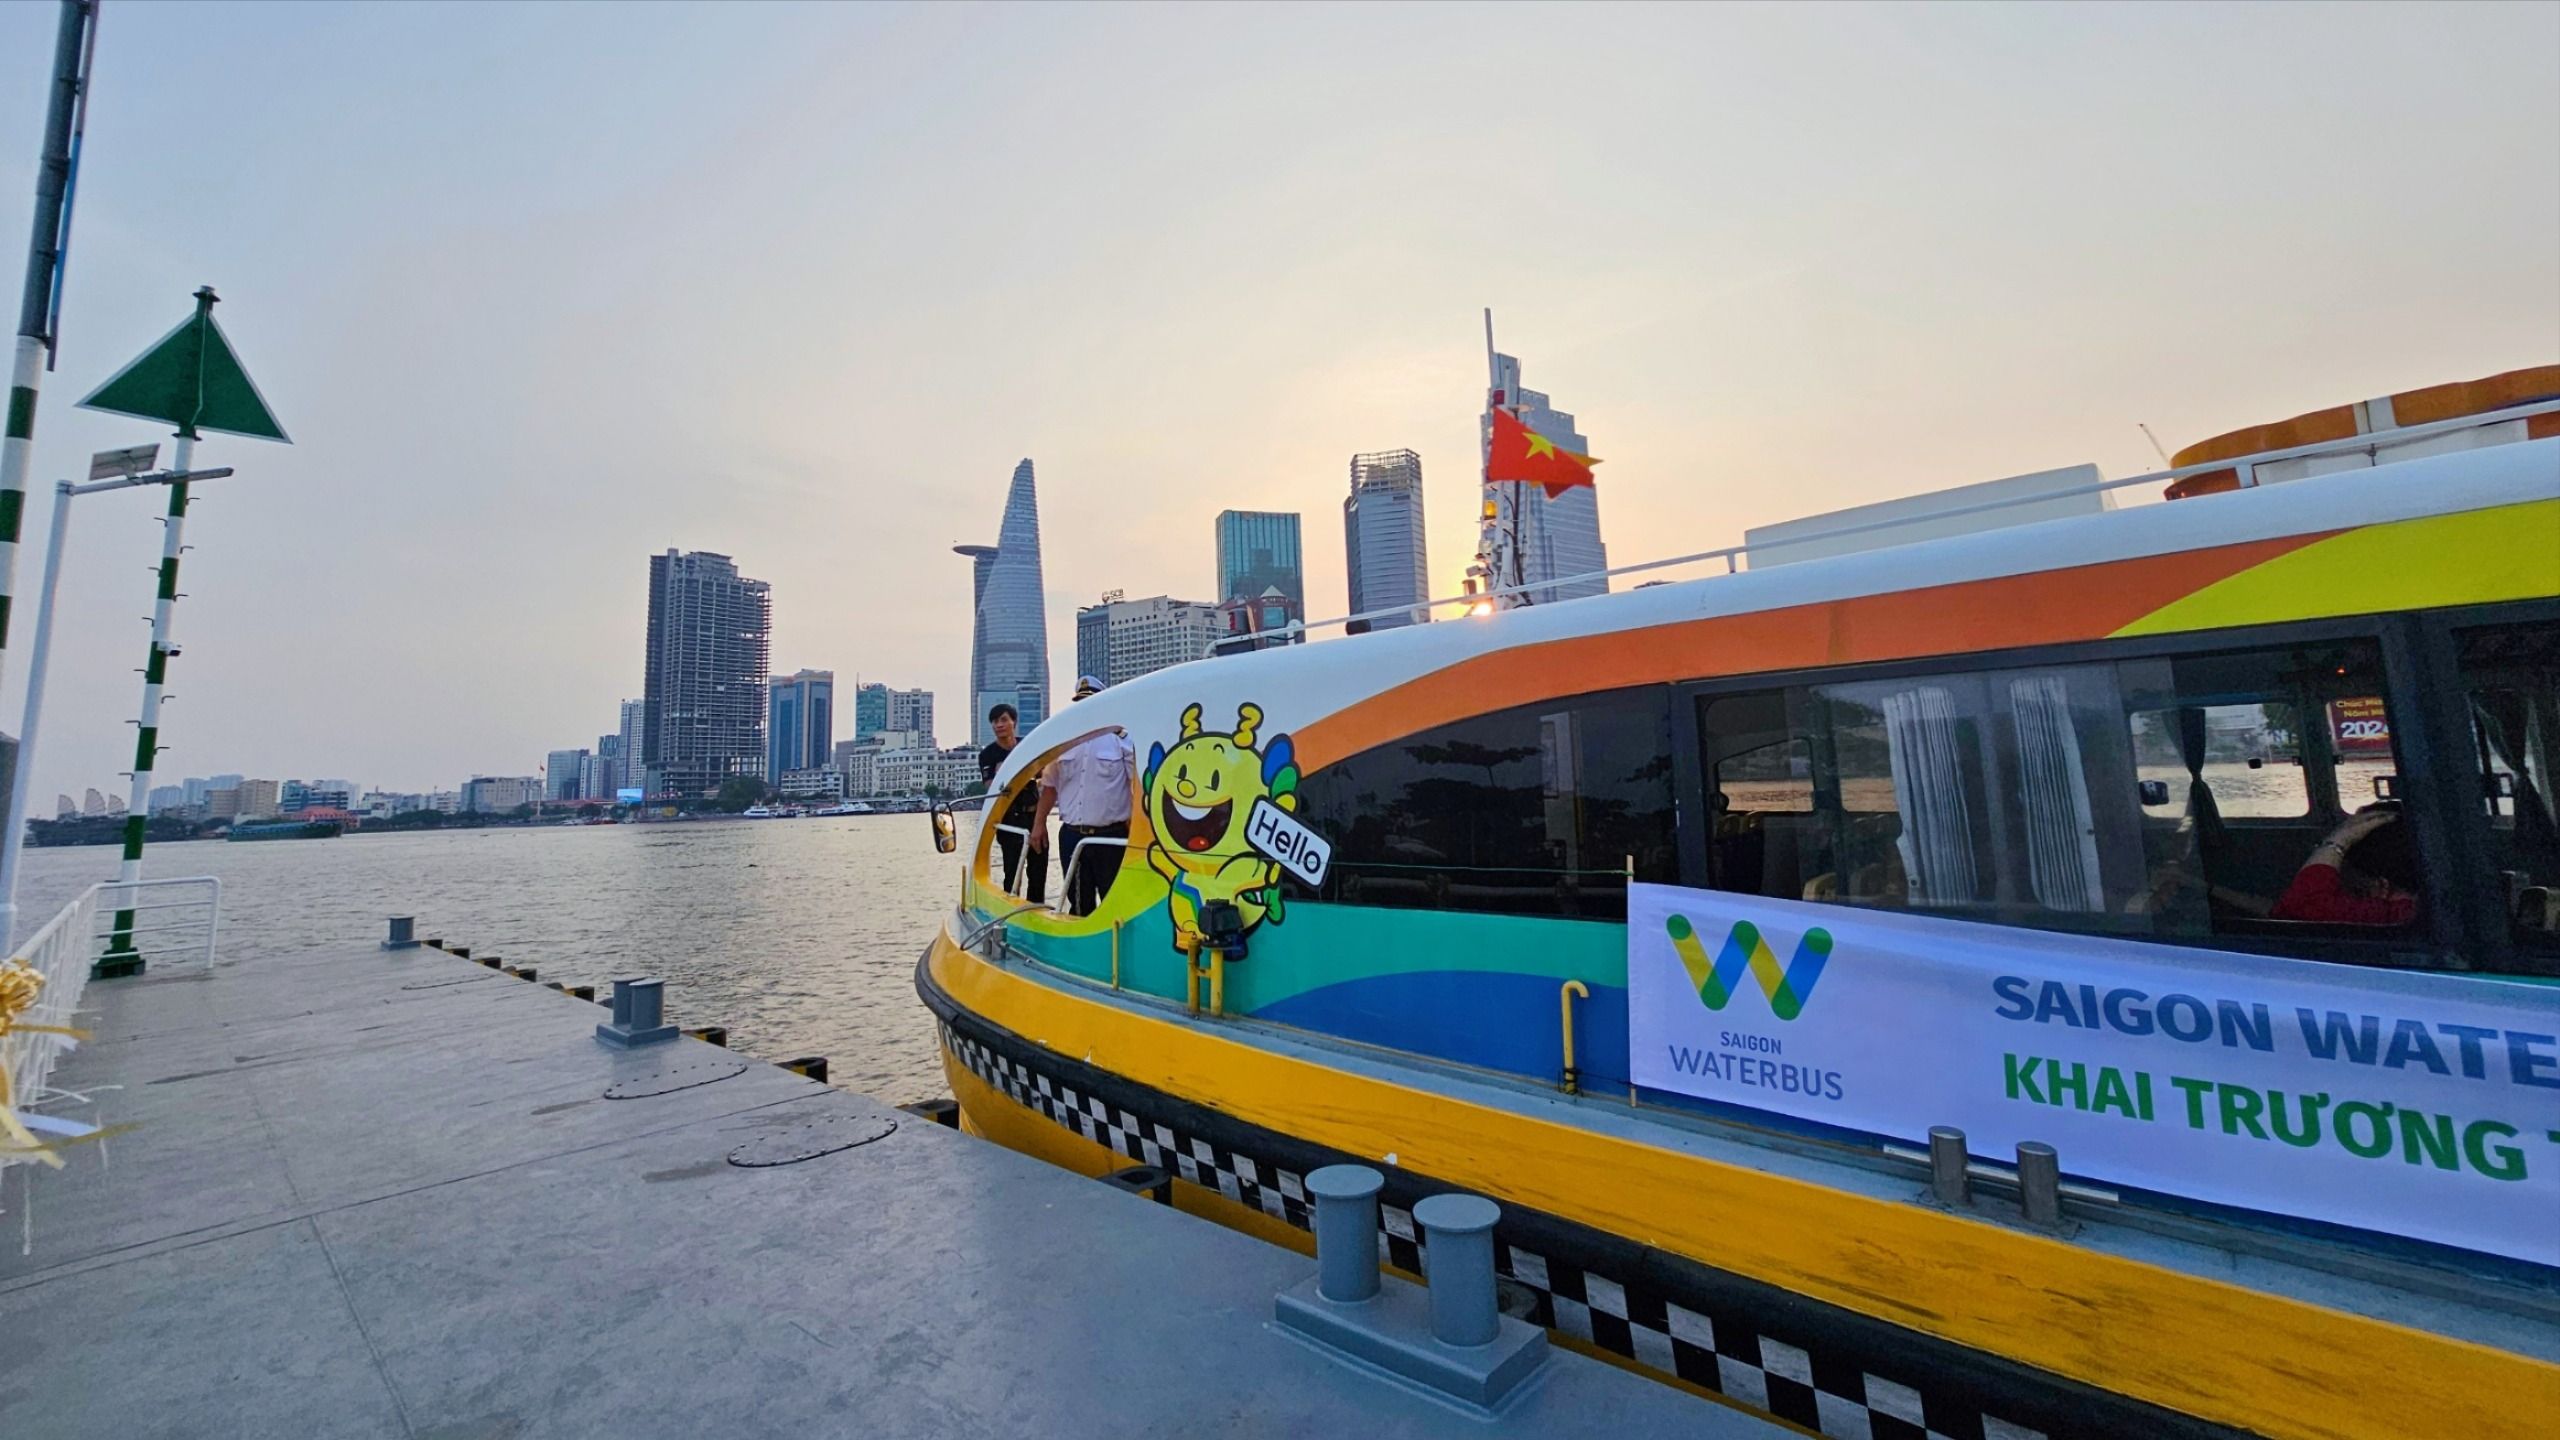 Trước thềm năm mới, du khách có thể đi buýt sông từ Công viên bờ sông Sài Gòn